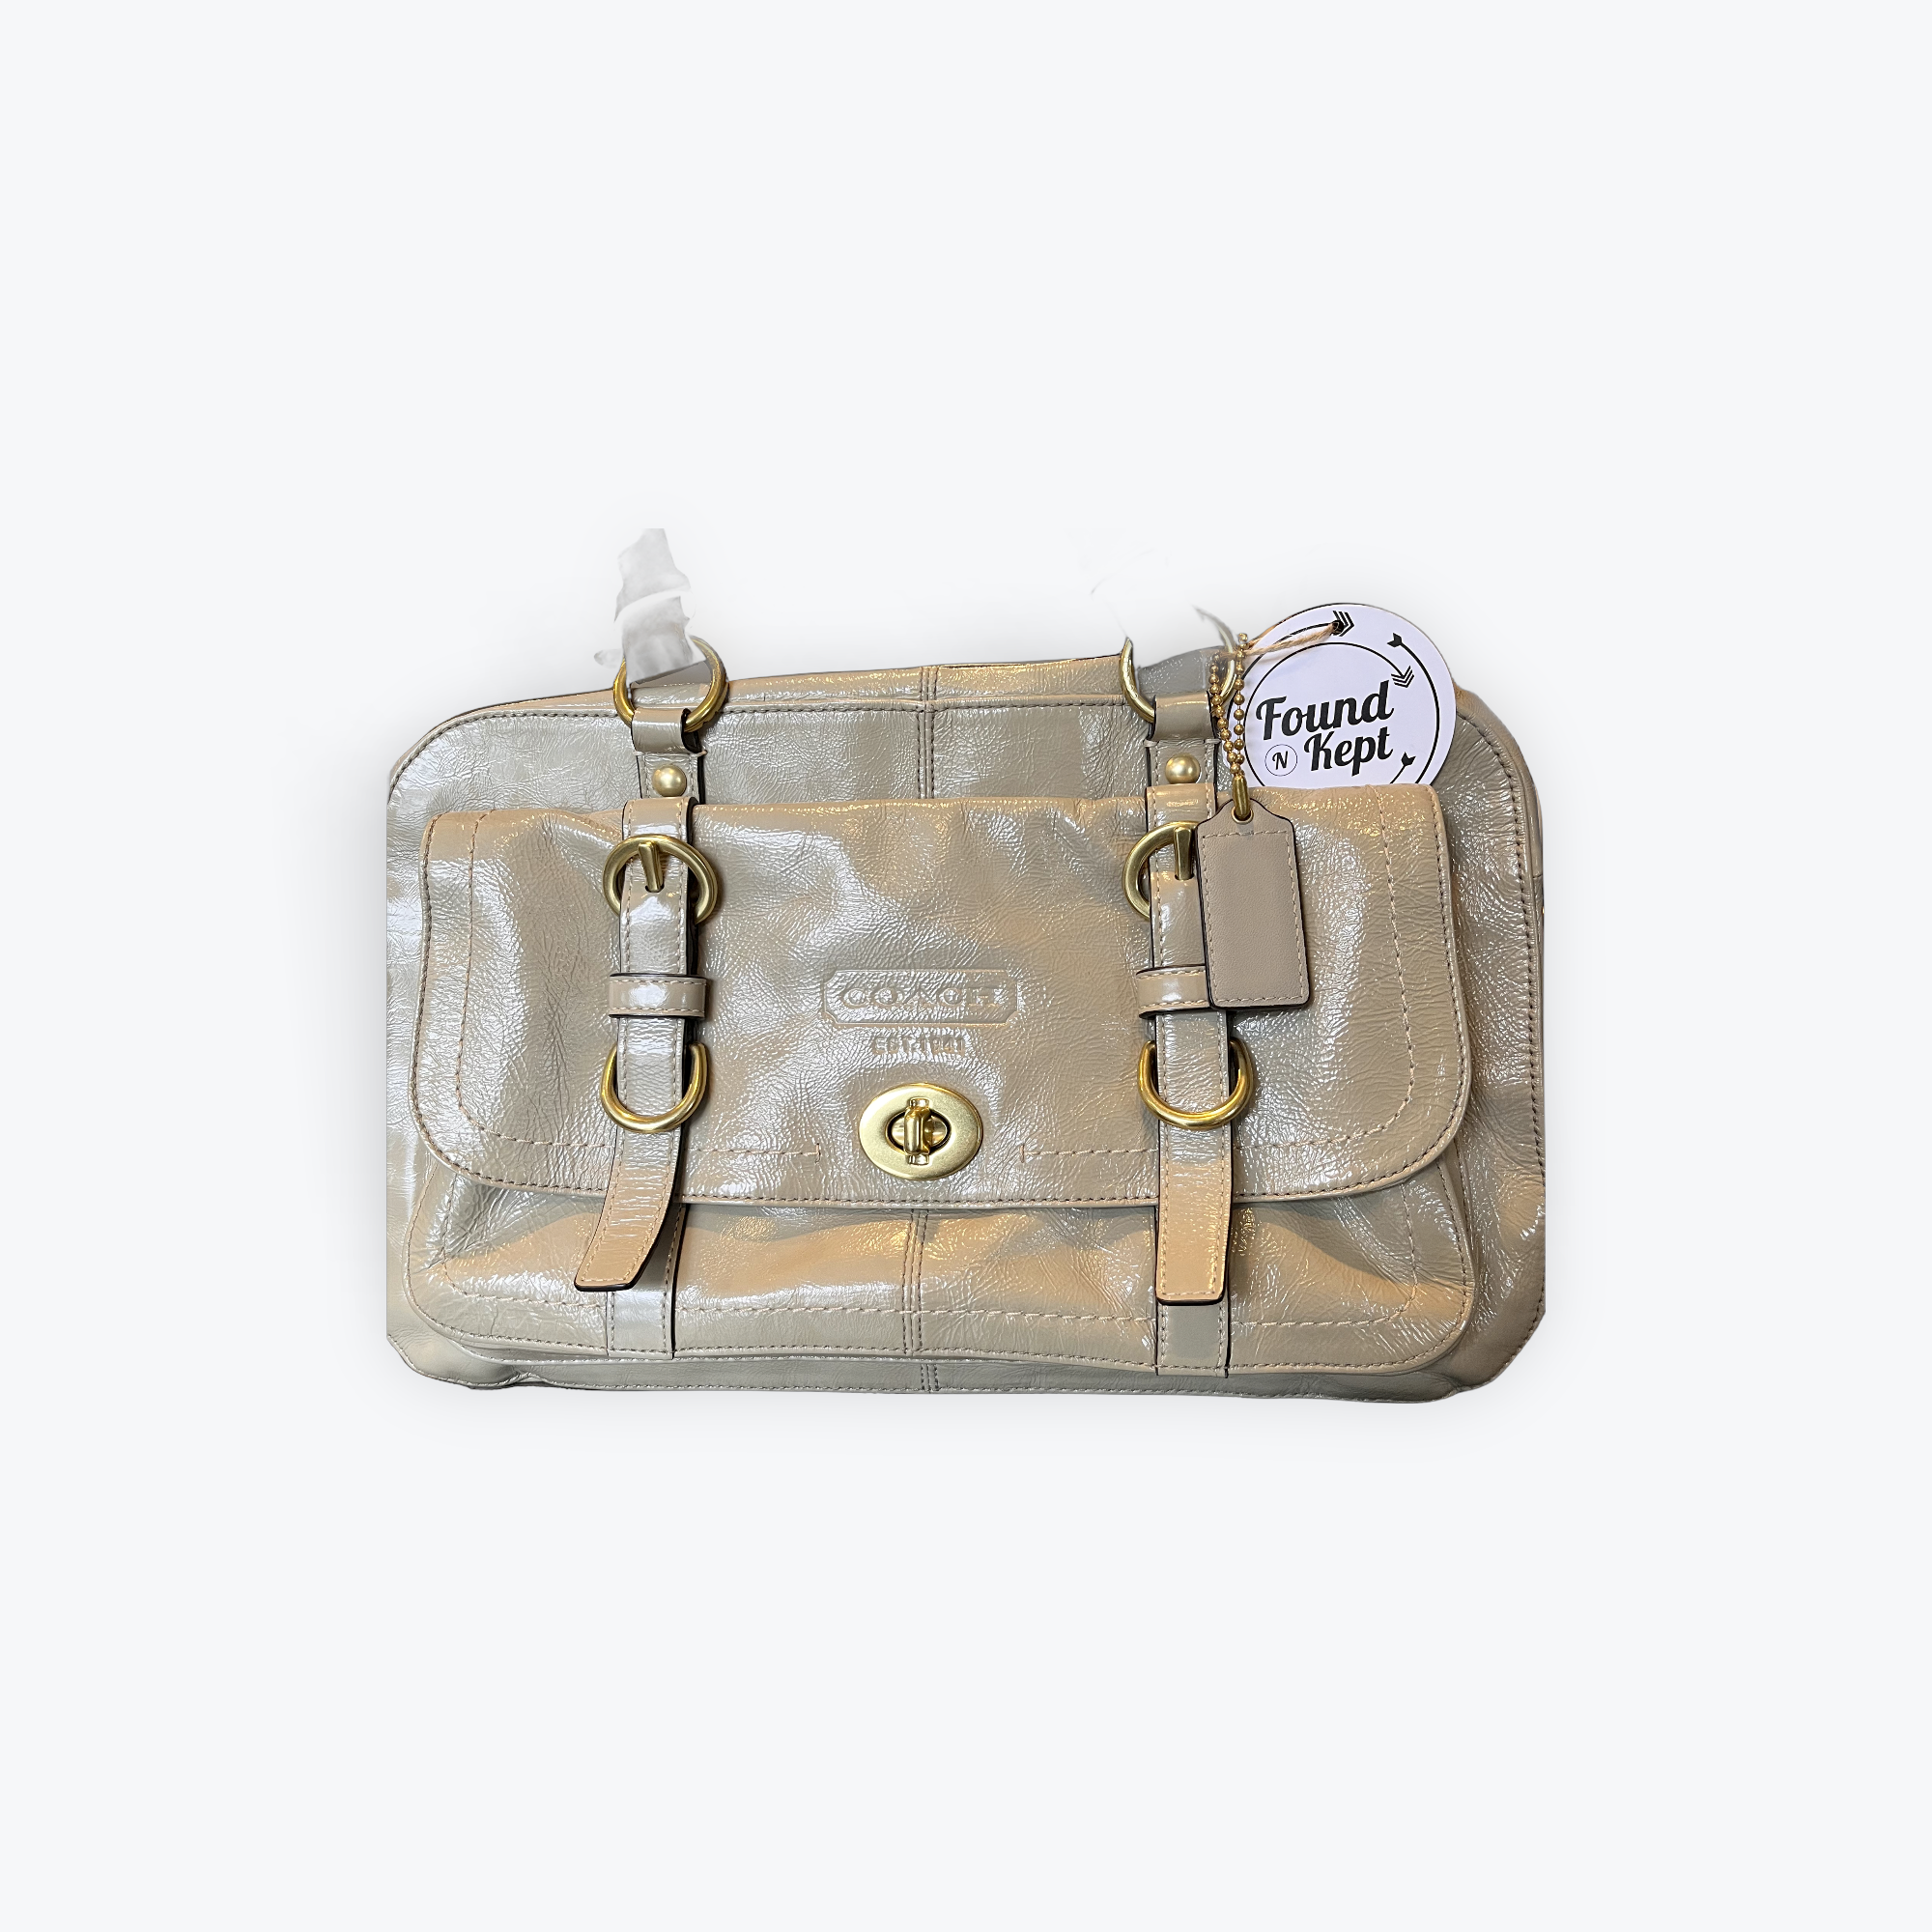 Coach Perforated Coach Bag Charm | Bag charm, Coach bags, Bags